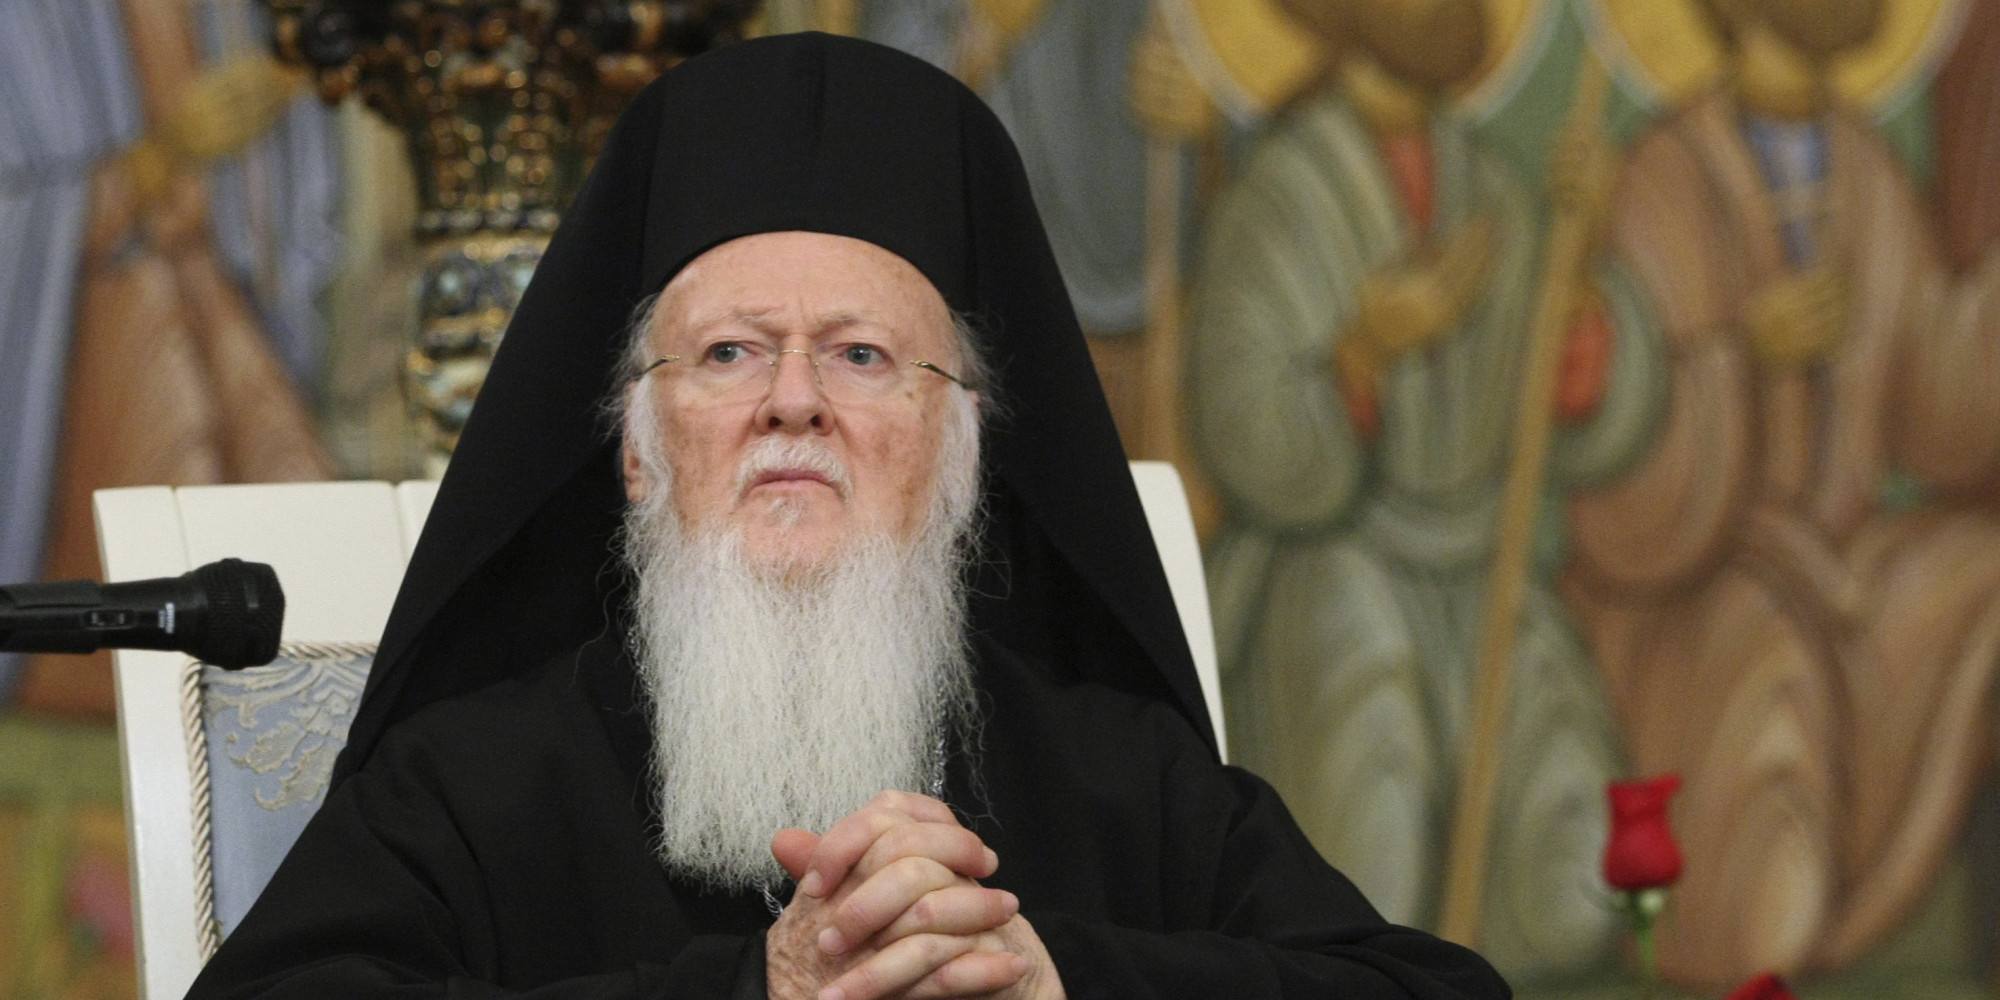 Πατριάρχης Βαρθολομαίος: «Αν η Αγιά Σοφία γίνει τζαμί εκατομμύρια Χριστιανοί θα στραφούν κατά του Ισλάμ»